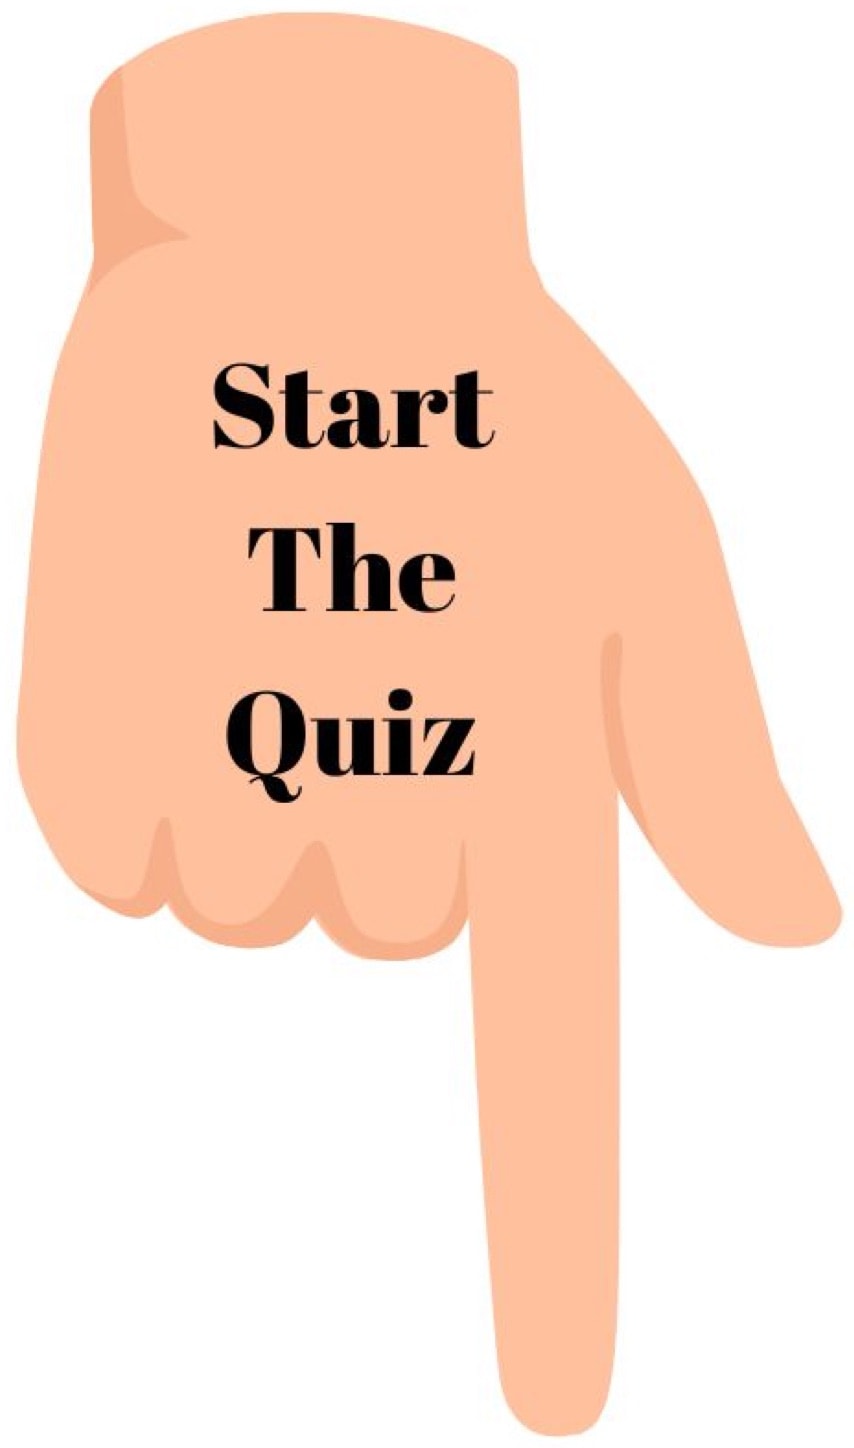 Start The Quiz